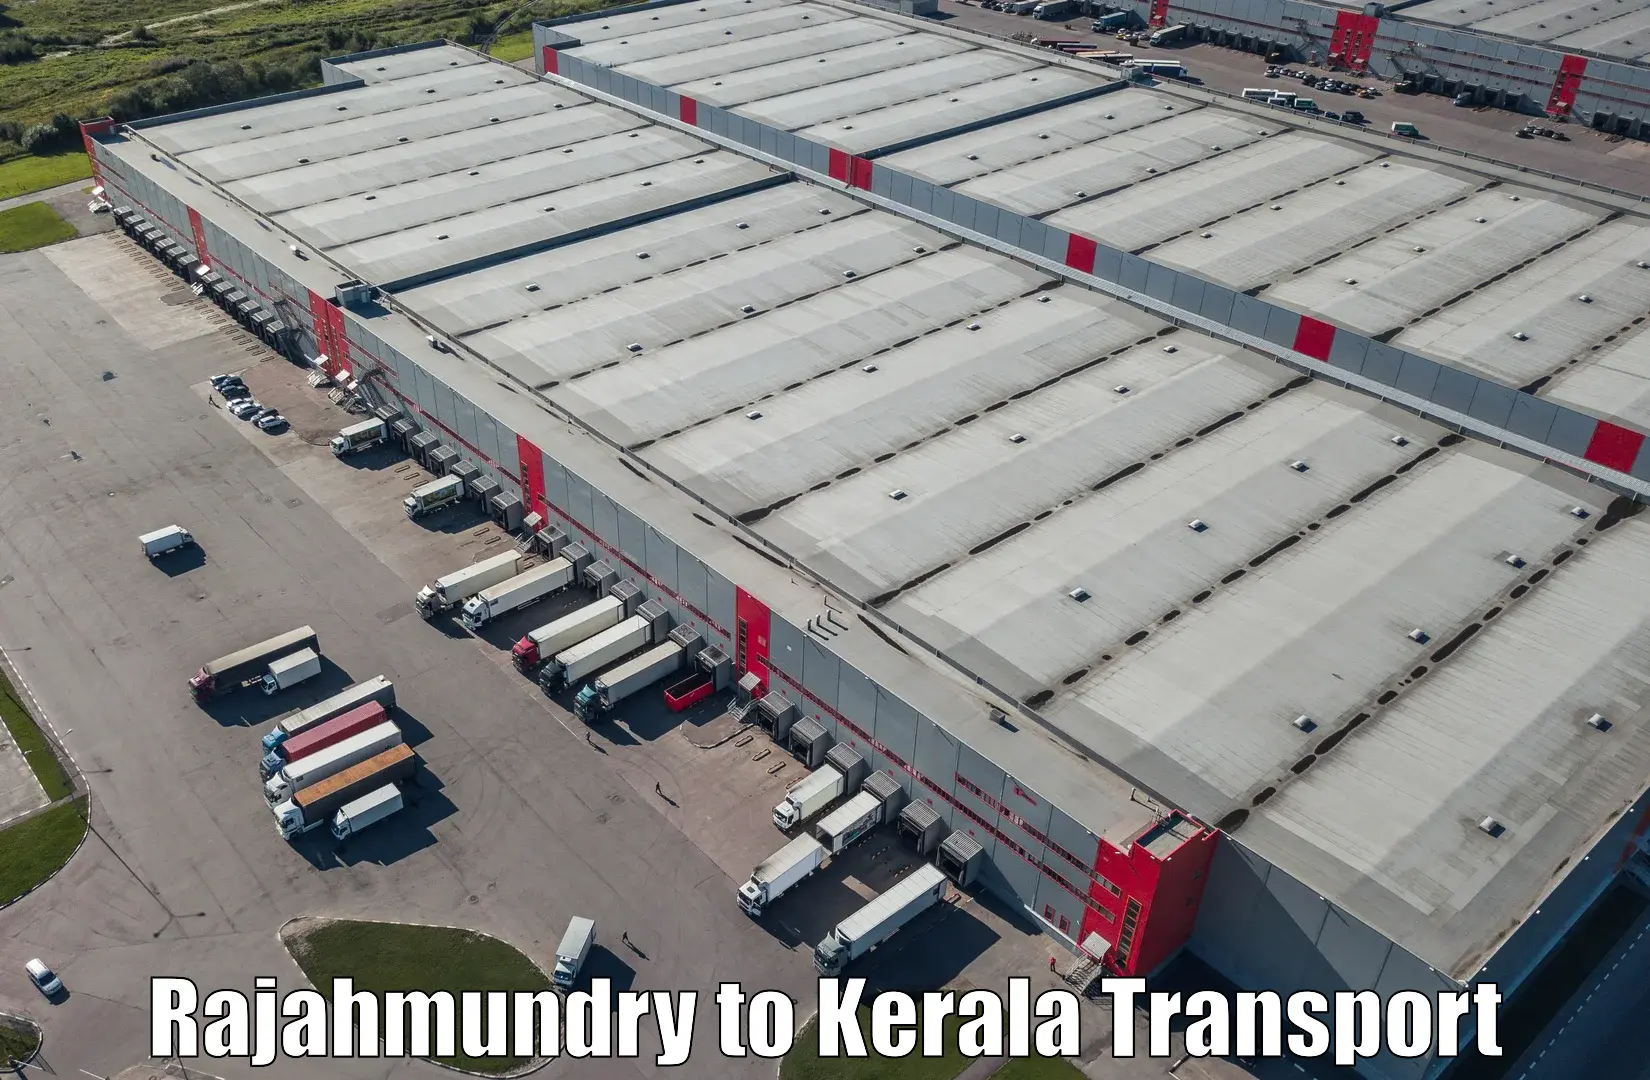 Furniture transport service Rajahmundry to Punalur